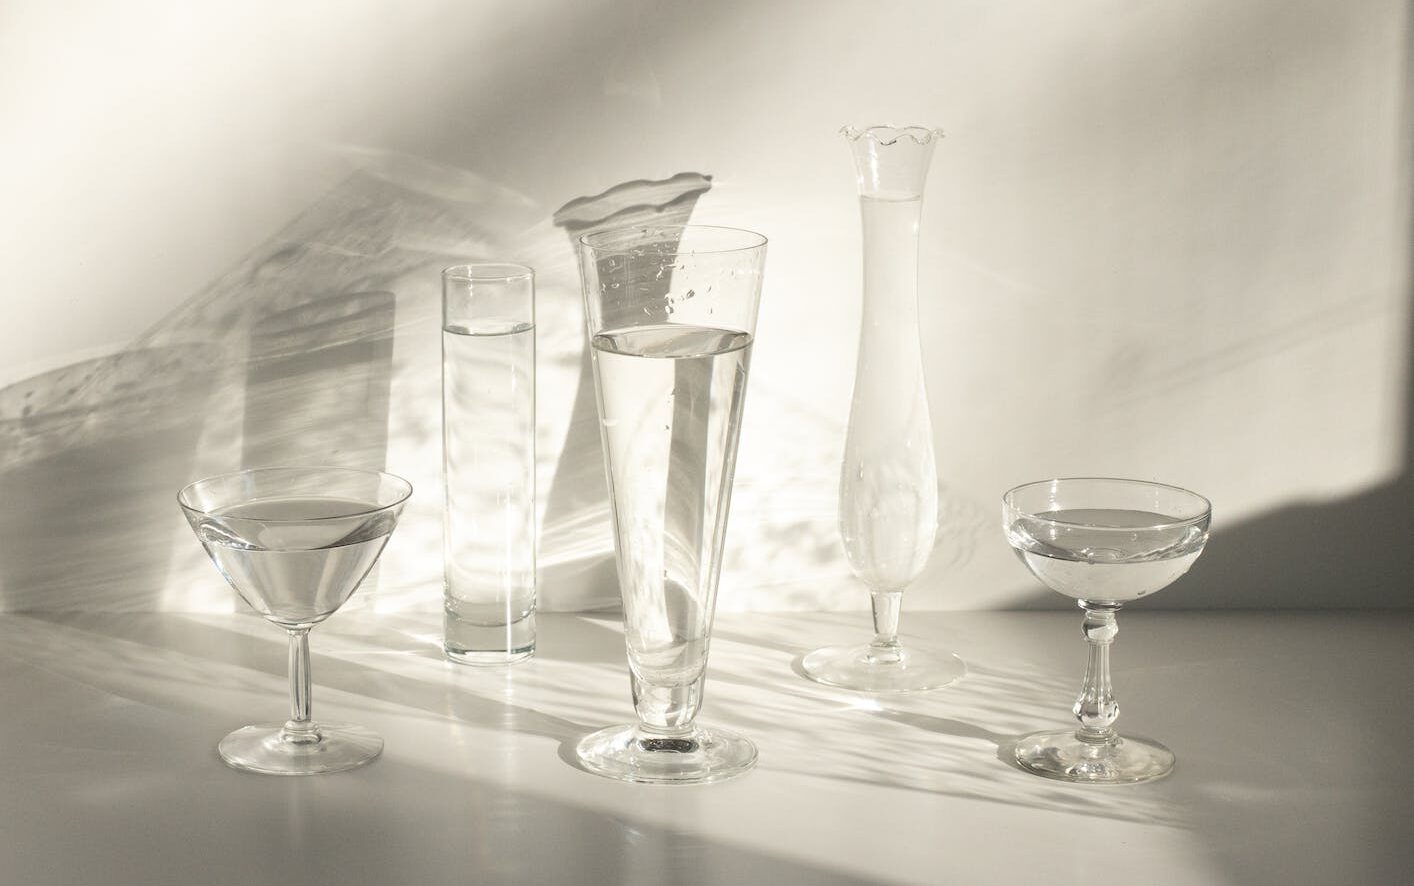 Een set glazen waar water in zit in plaats van alcoholische dranken